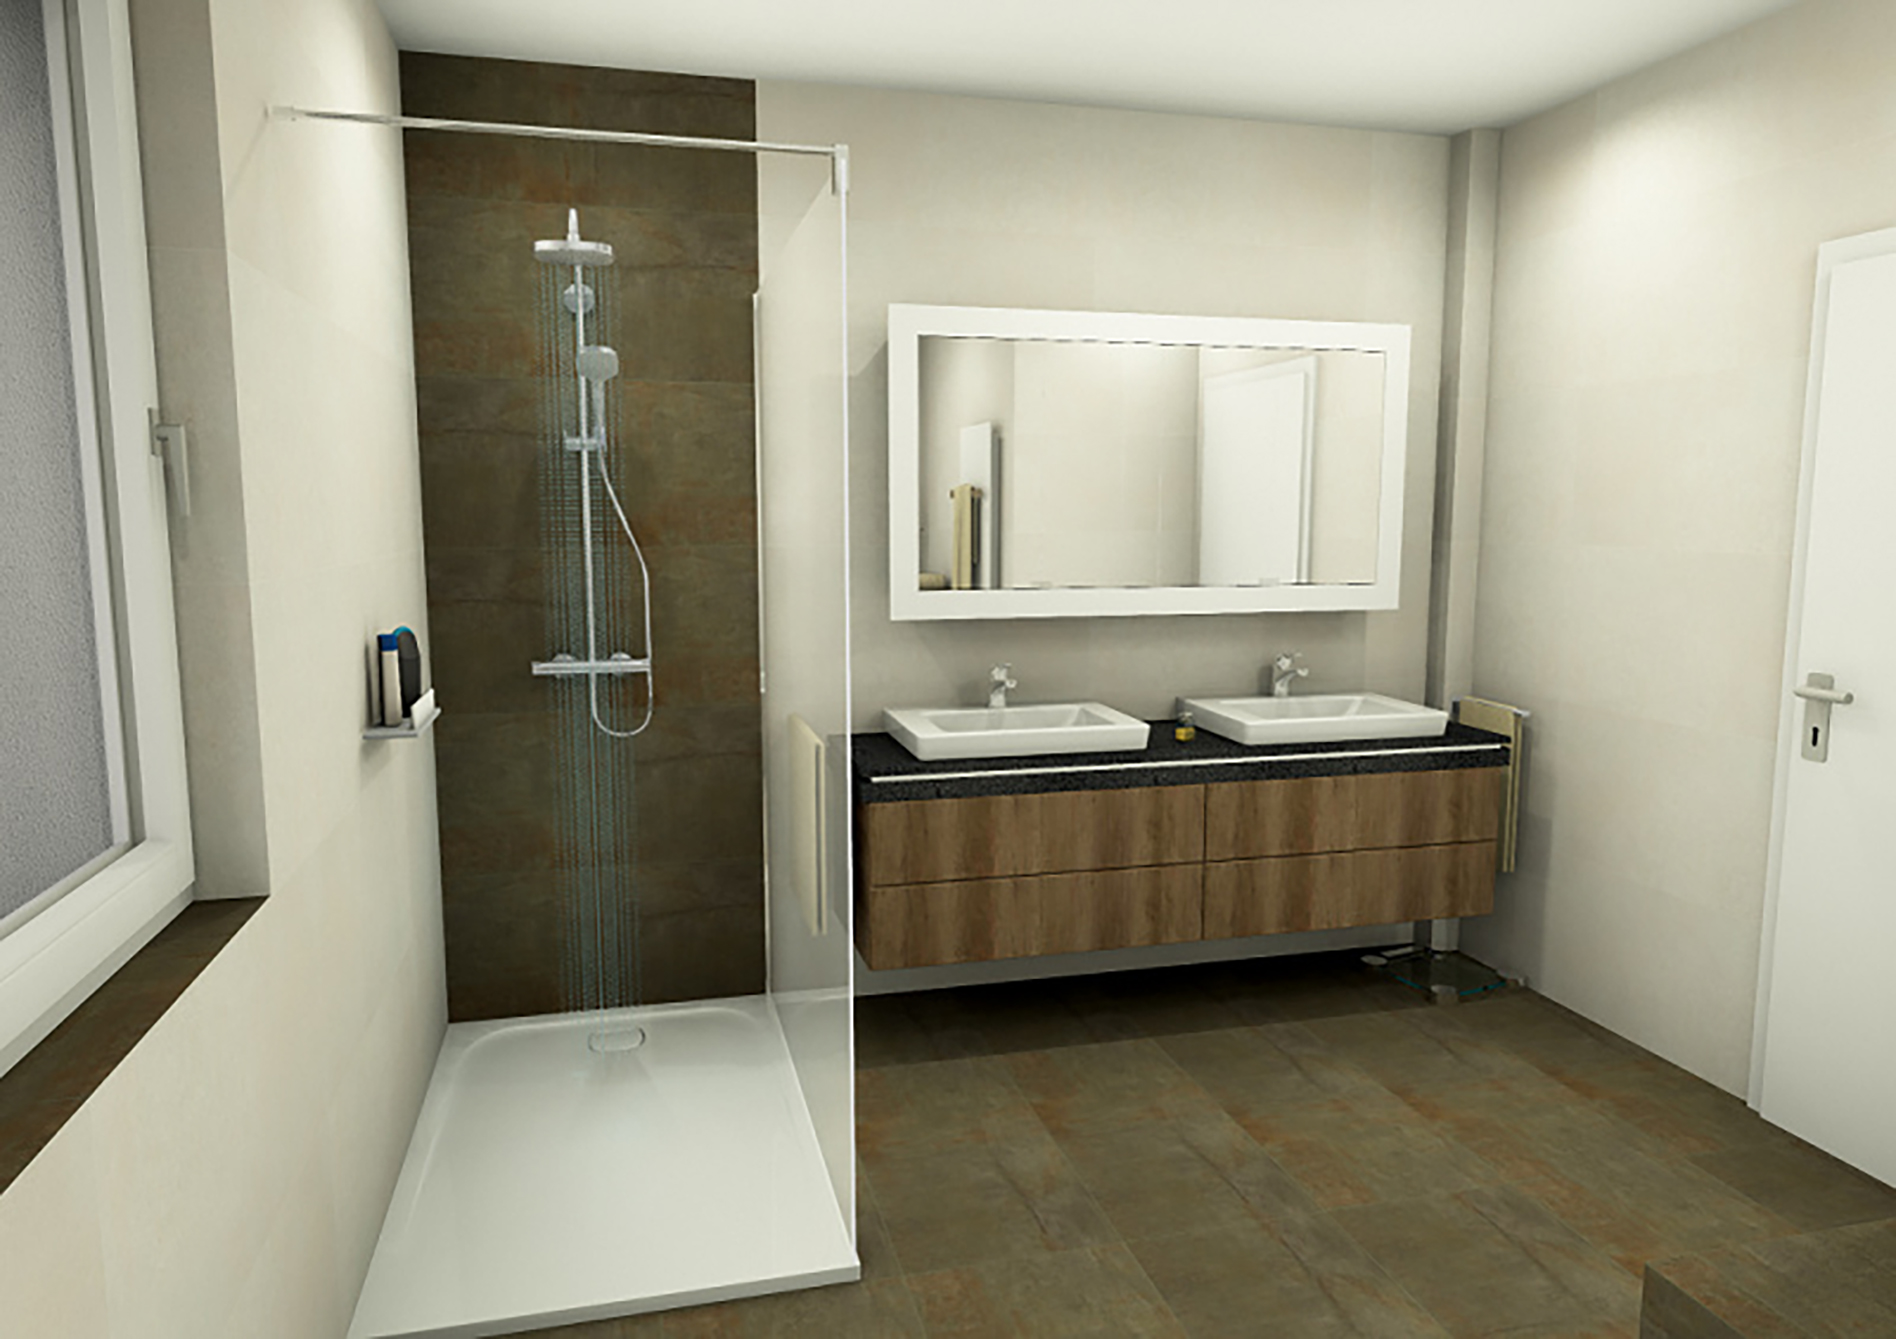 Planungsbeispiel: Badezimmer ein einem skandinavischen Stil